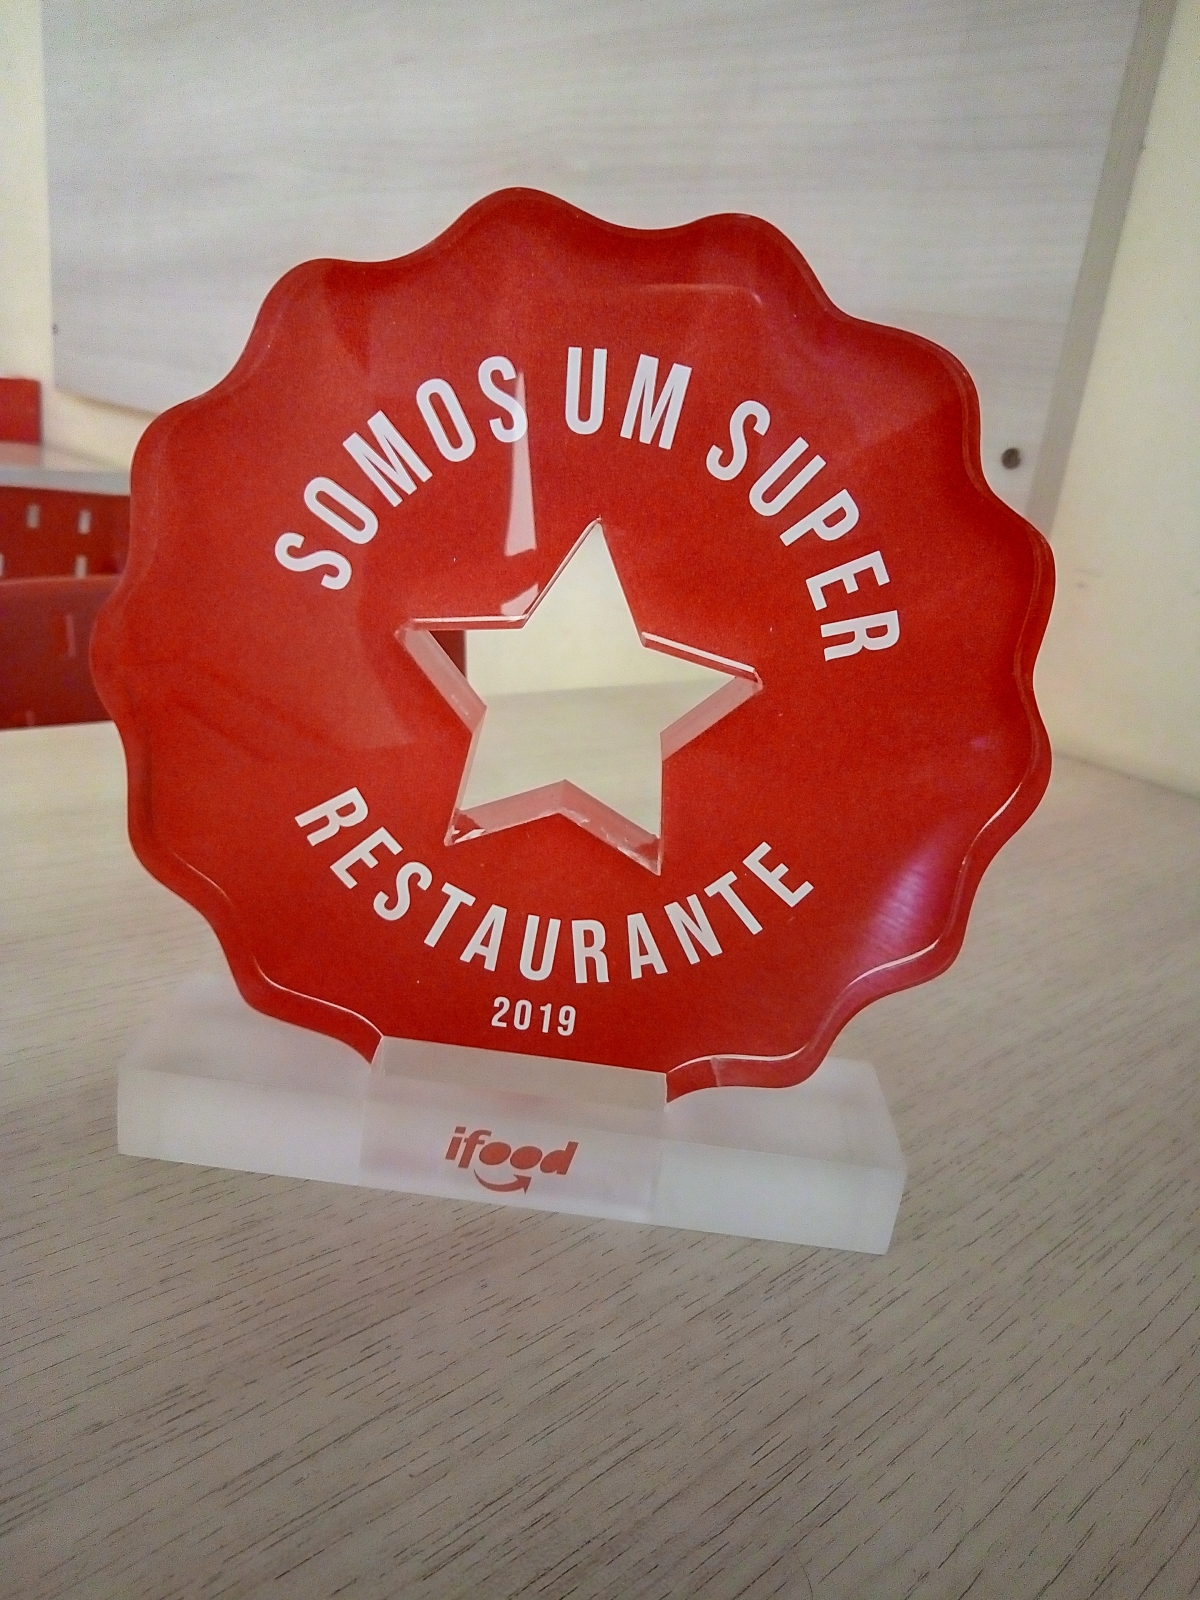 Repasse Restaurante Comida Típica Brasileira - Franquia